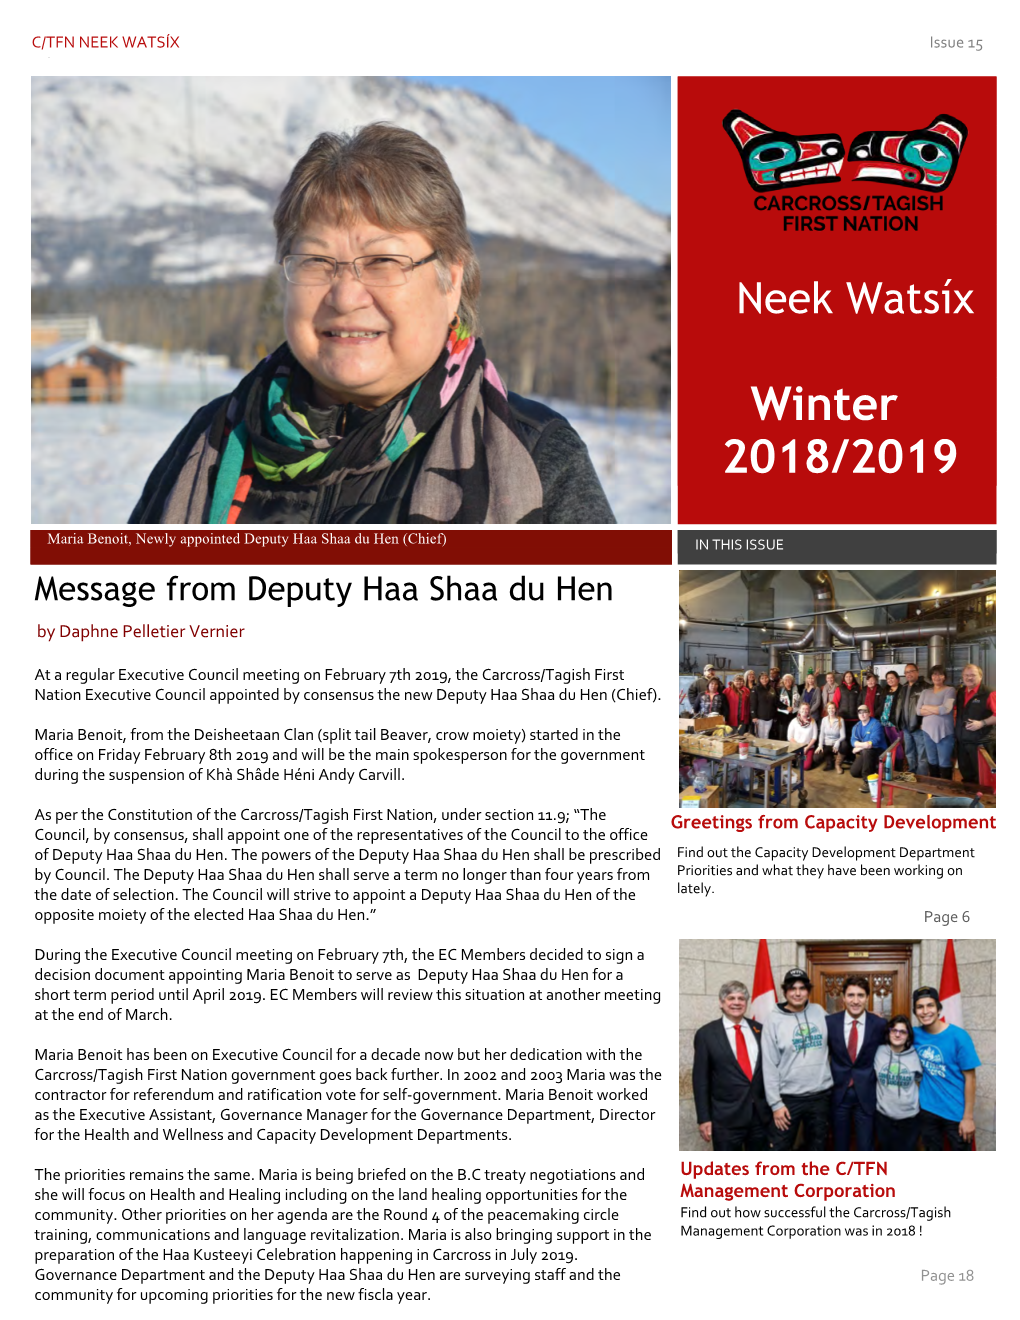 Newsletter Winter 2018/2019